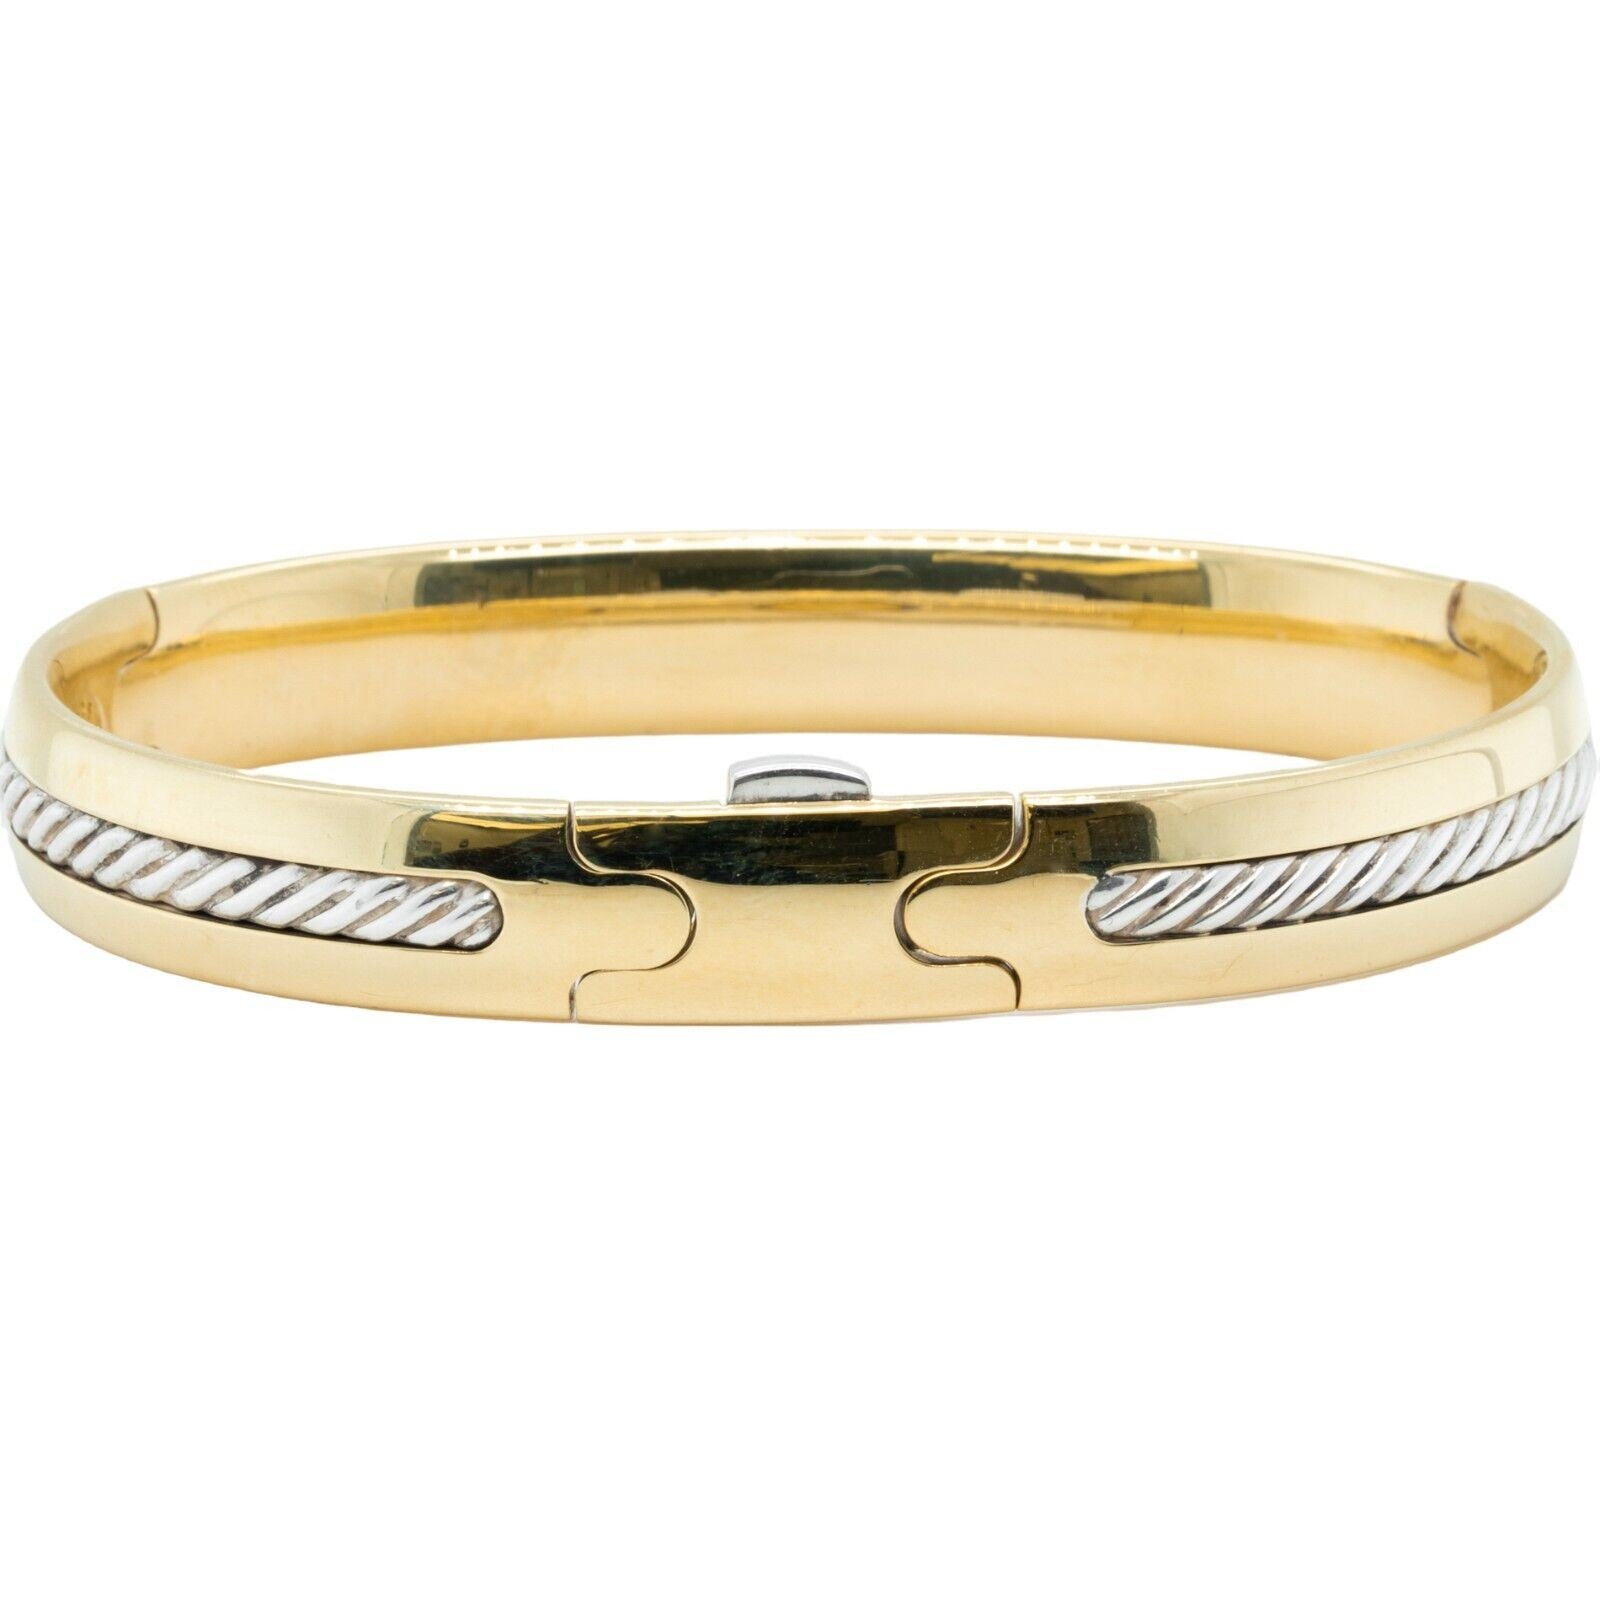 David Yurman 18k Yellow Gold & 925 Sterling Silver Cable Bangle Bracelet 7.25"